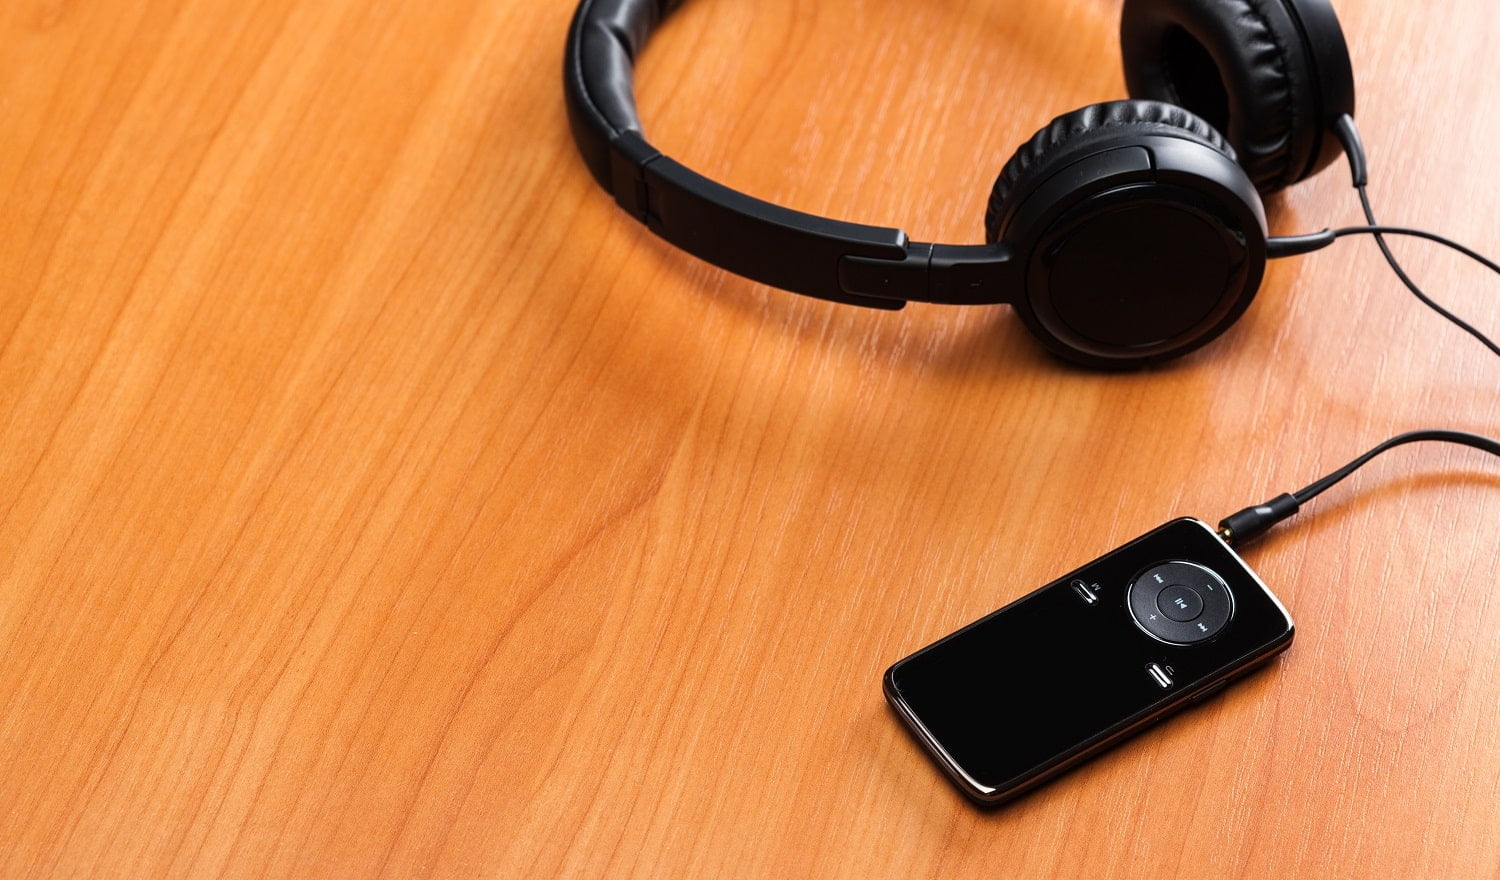 headphones on wooden background